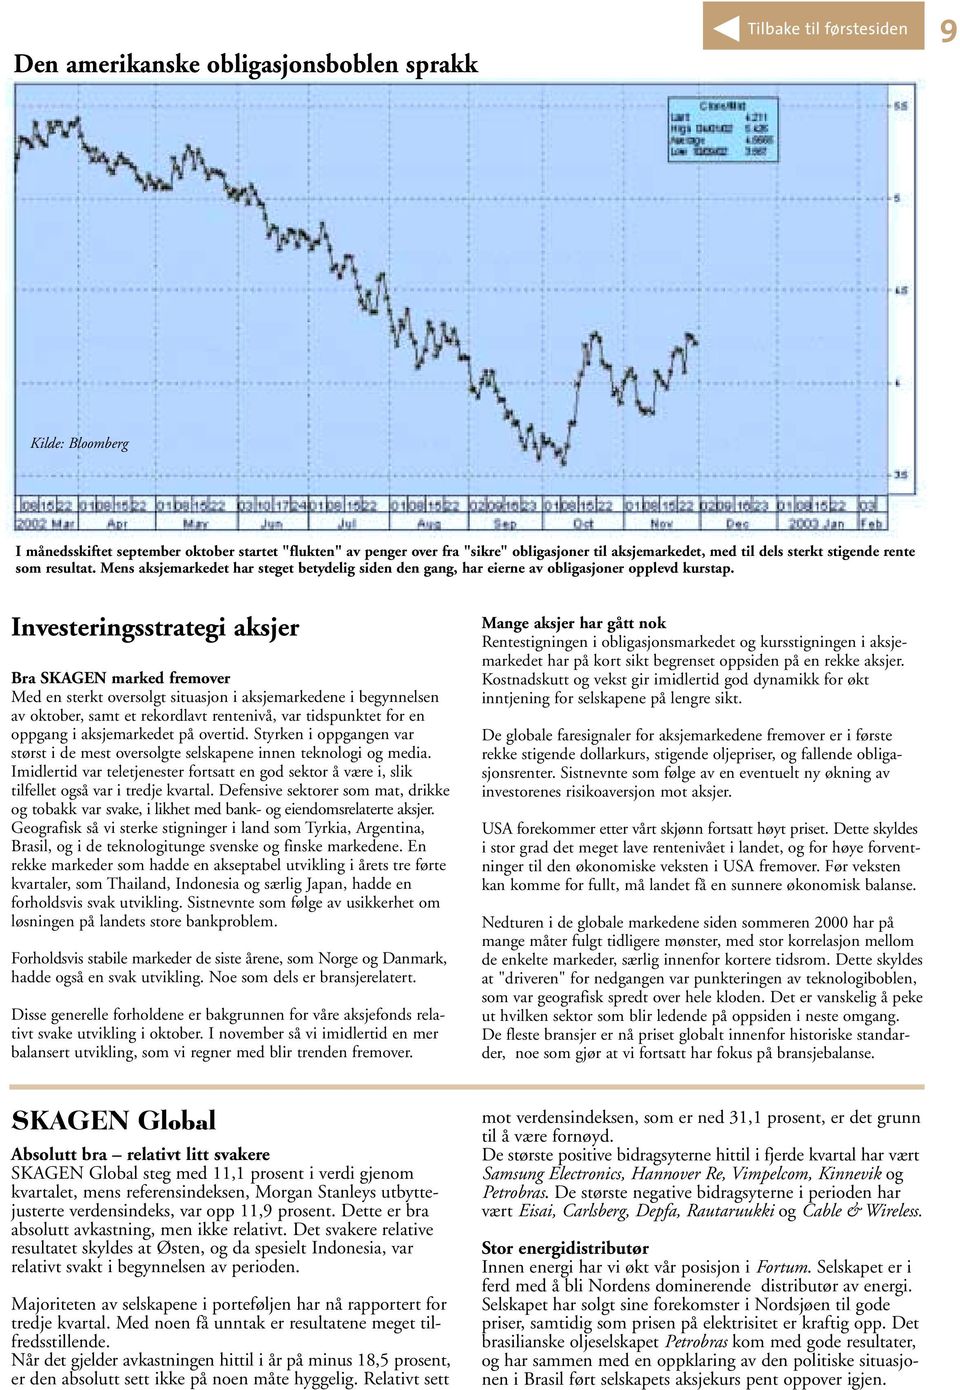 Investeringsstrategi aksjer Bra SKAGEN marked fremover Med en sterkt oversolgt situasjon i aksjemarkedene i begynnelsen av oktober, samt et rekordlavt rentenivå, var tidspunktet for en oppgang i